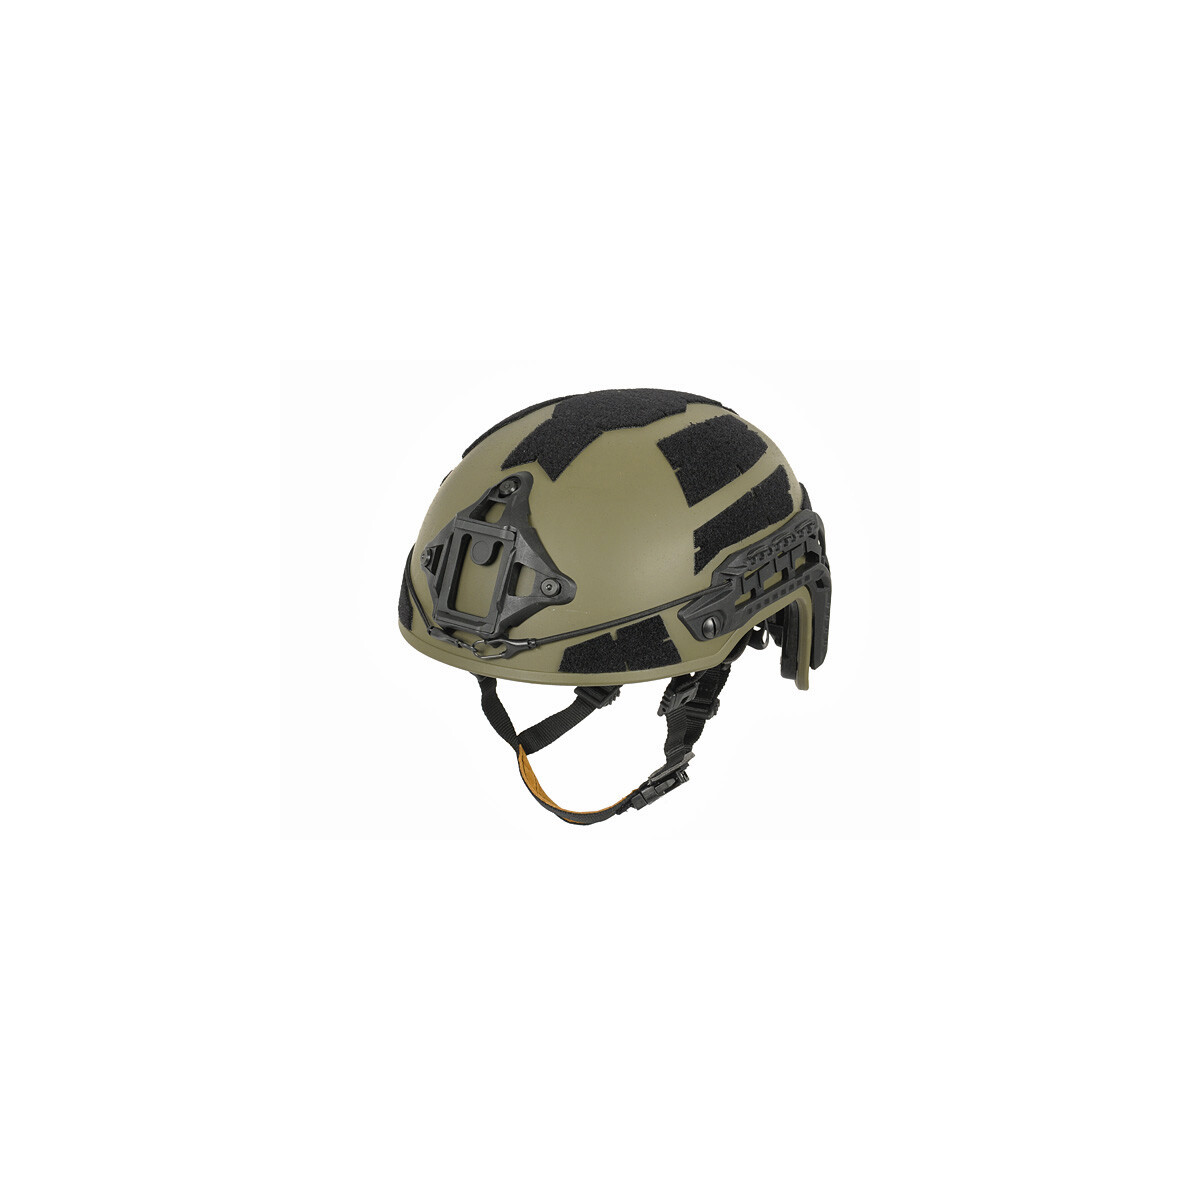 Next-generation Spec-Ops ballistic helm - Ranger Green [FMA]